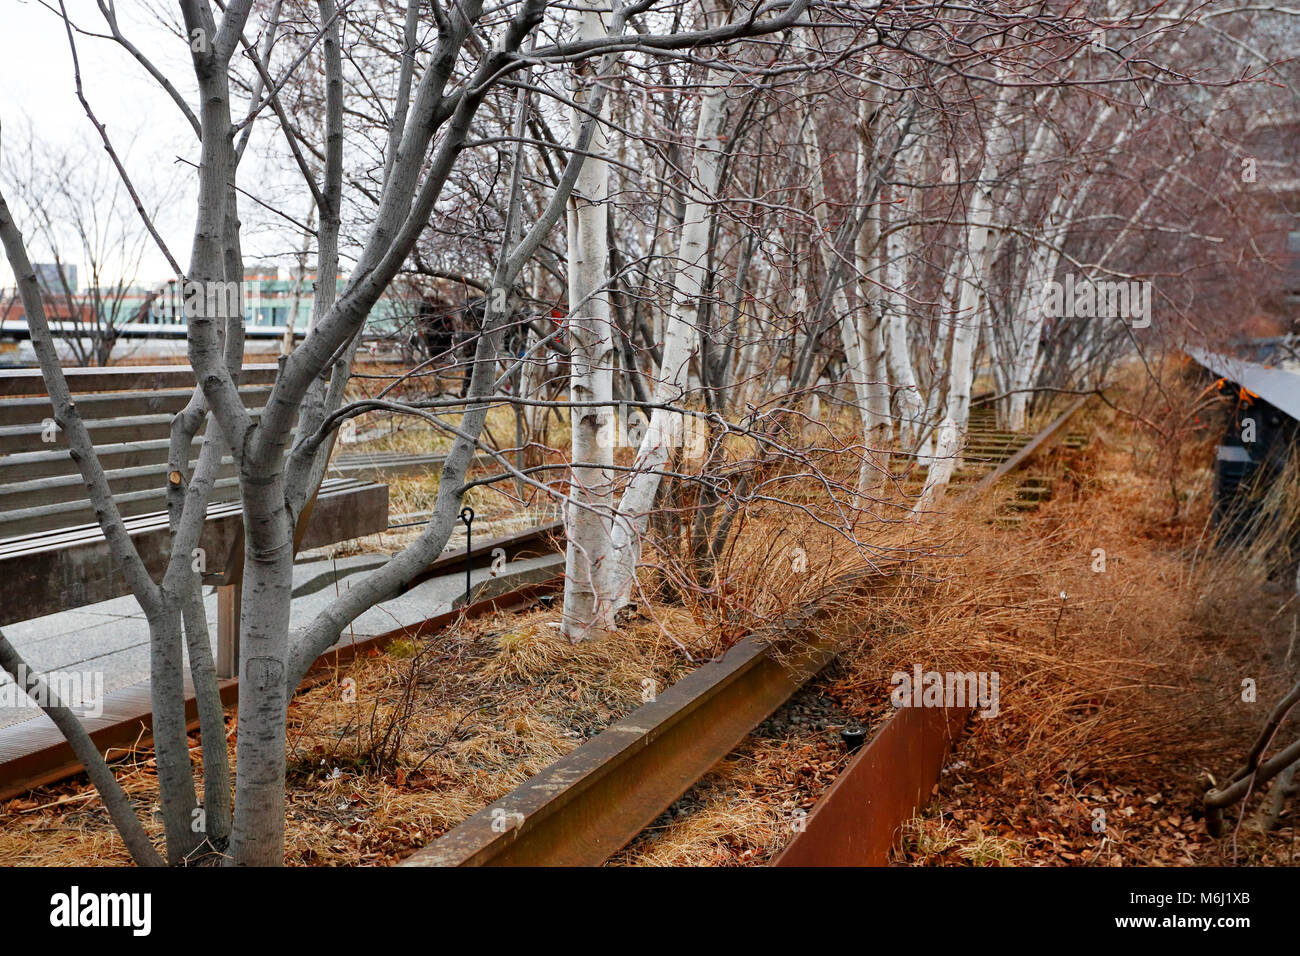 Alberi di betulla e vecchie rotaie nel parco High Line, New York. Il parco ha portato a rapidi cambiamenti nel quartiere di Chelsea e divenne uno strumento di gentrificazione Foto Stock